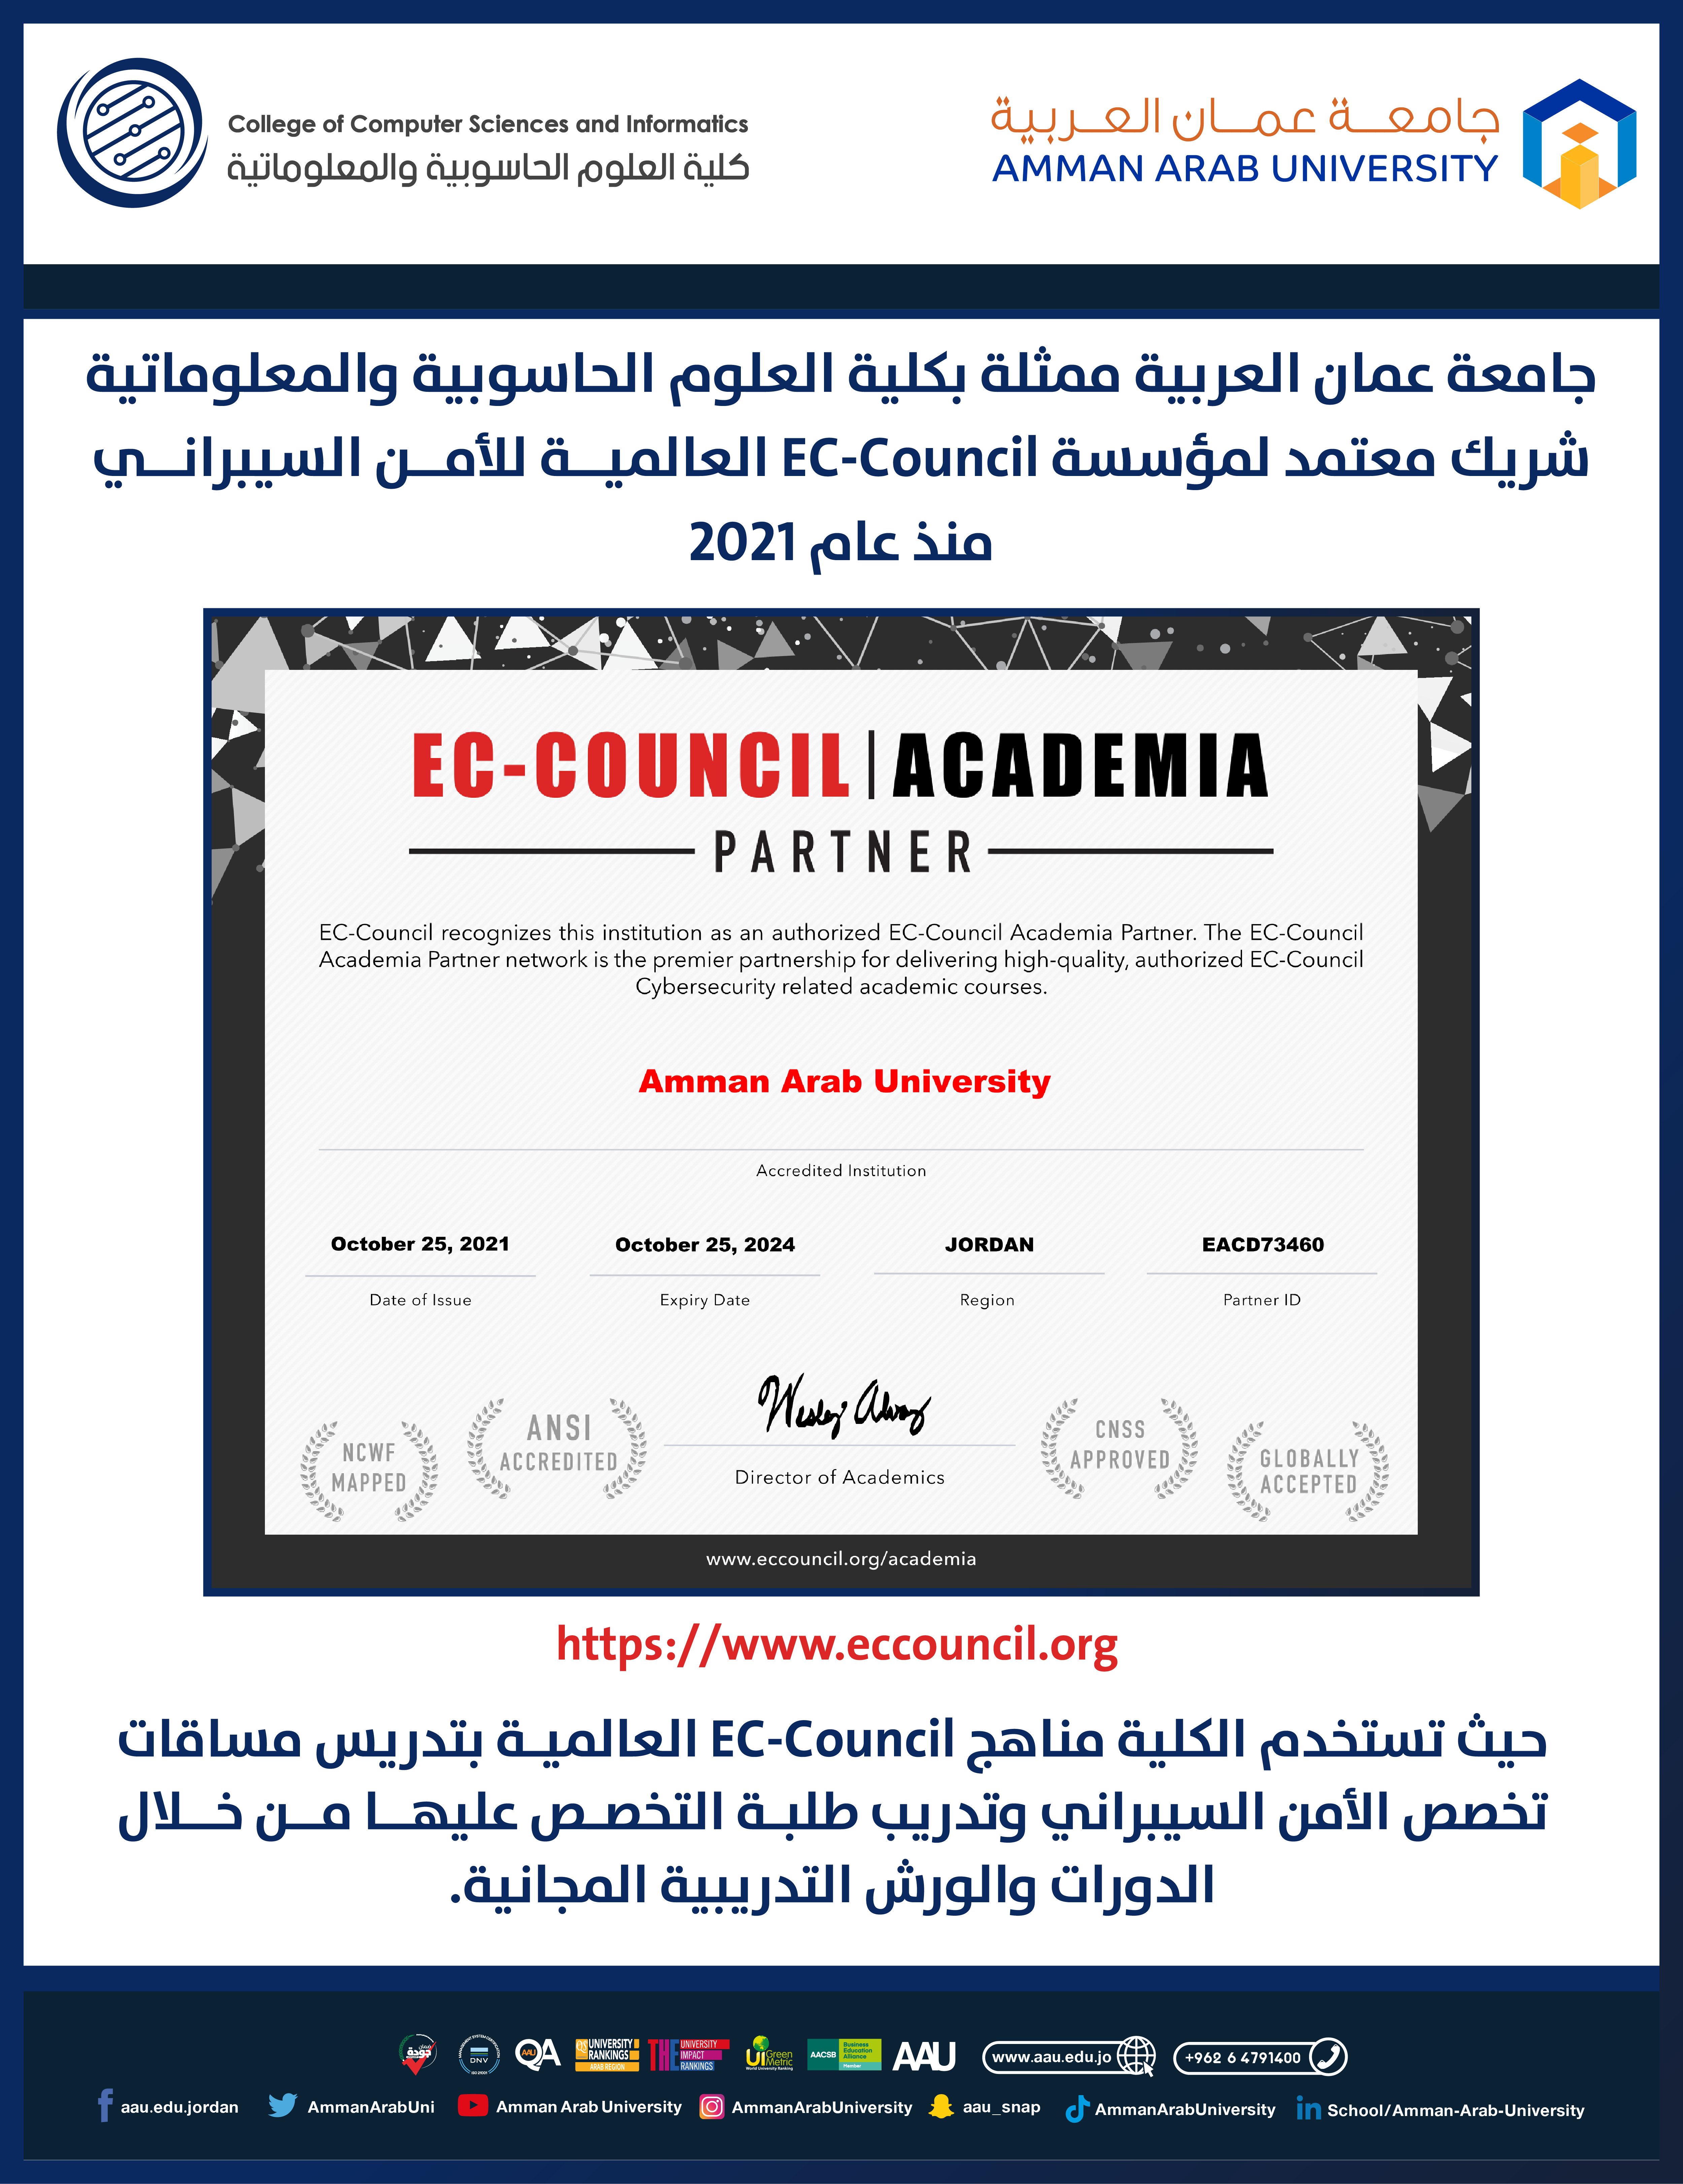  نشر بوست تسويقي بعضوية الكلية لمؤسسة EC-Council 